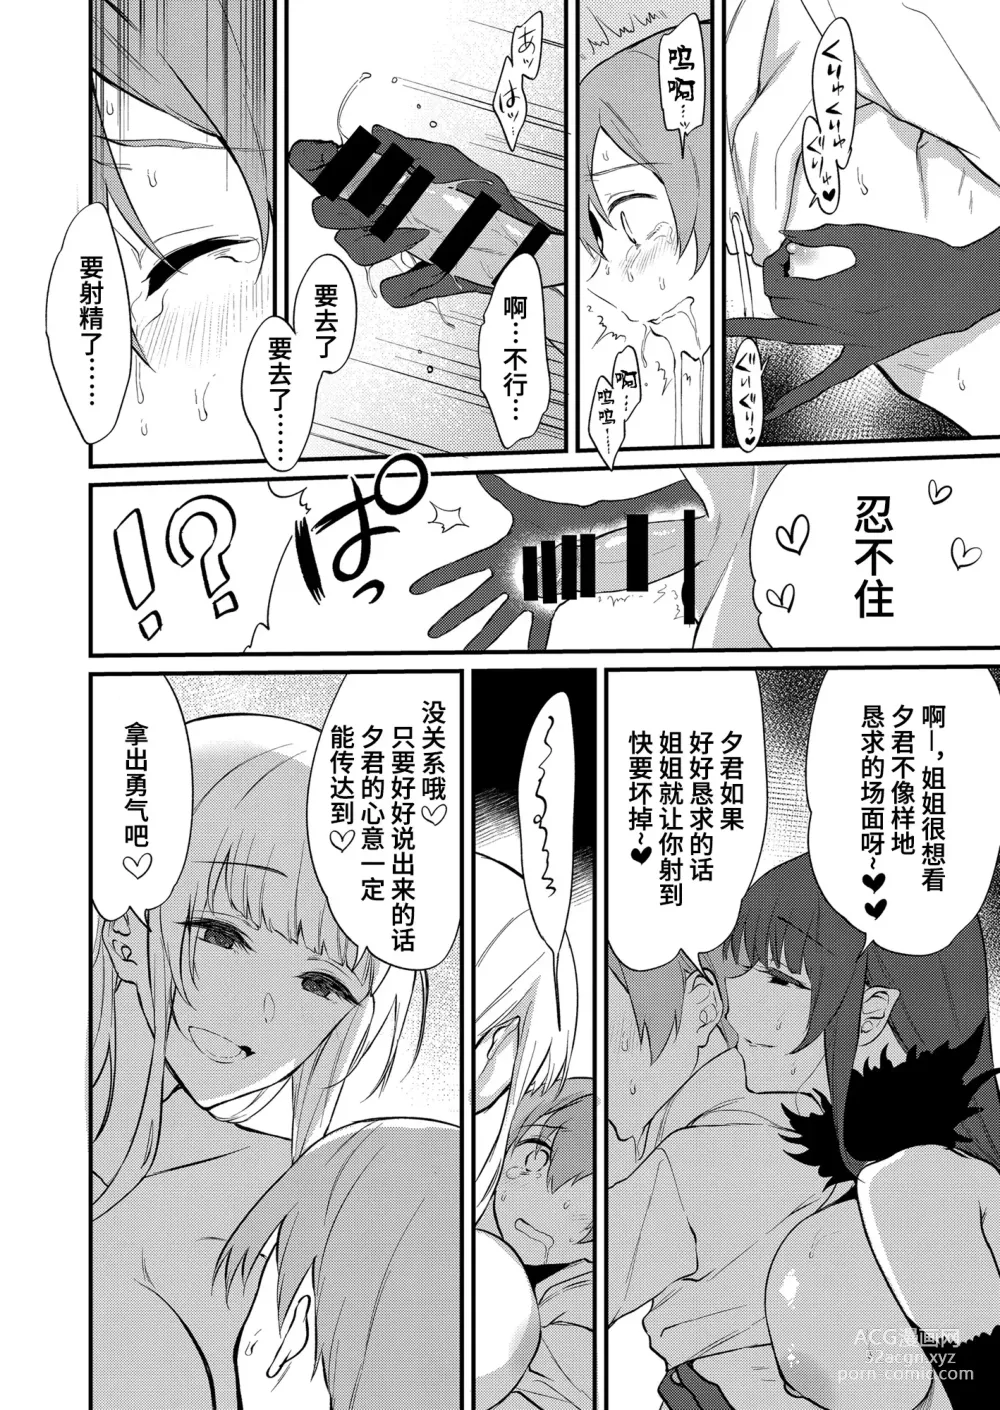 Page 438 of doujinshi Ane Naru Mono 1-11